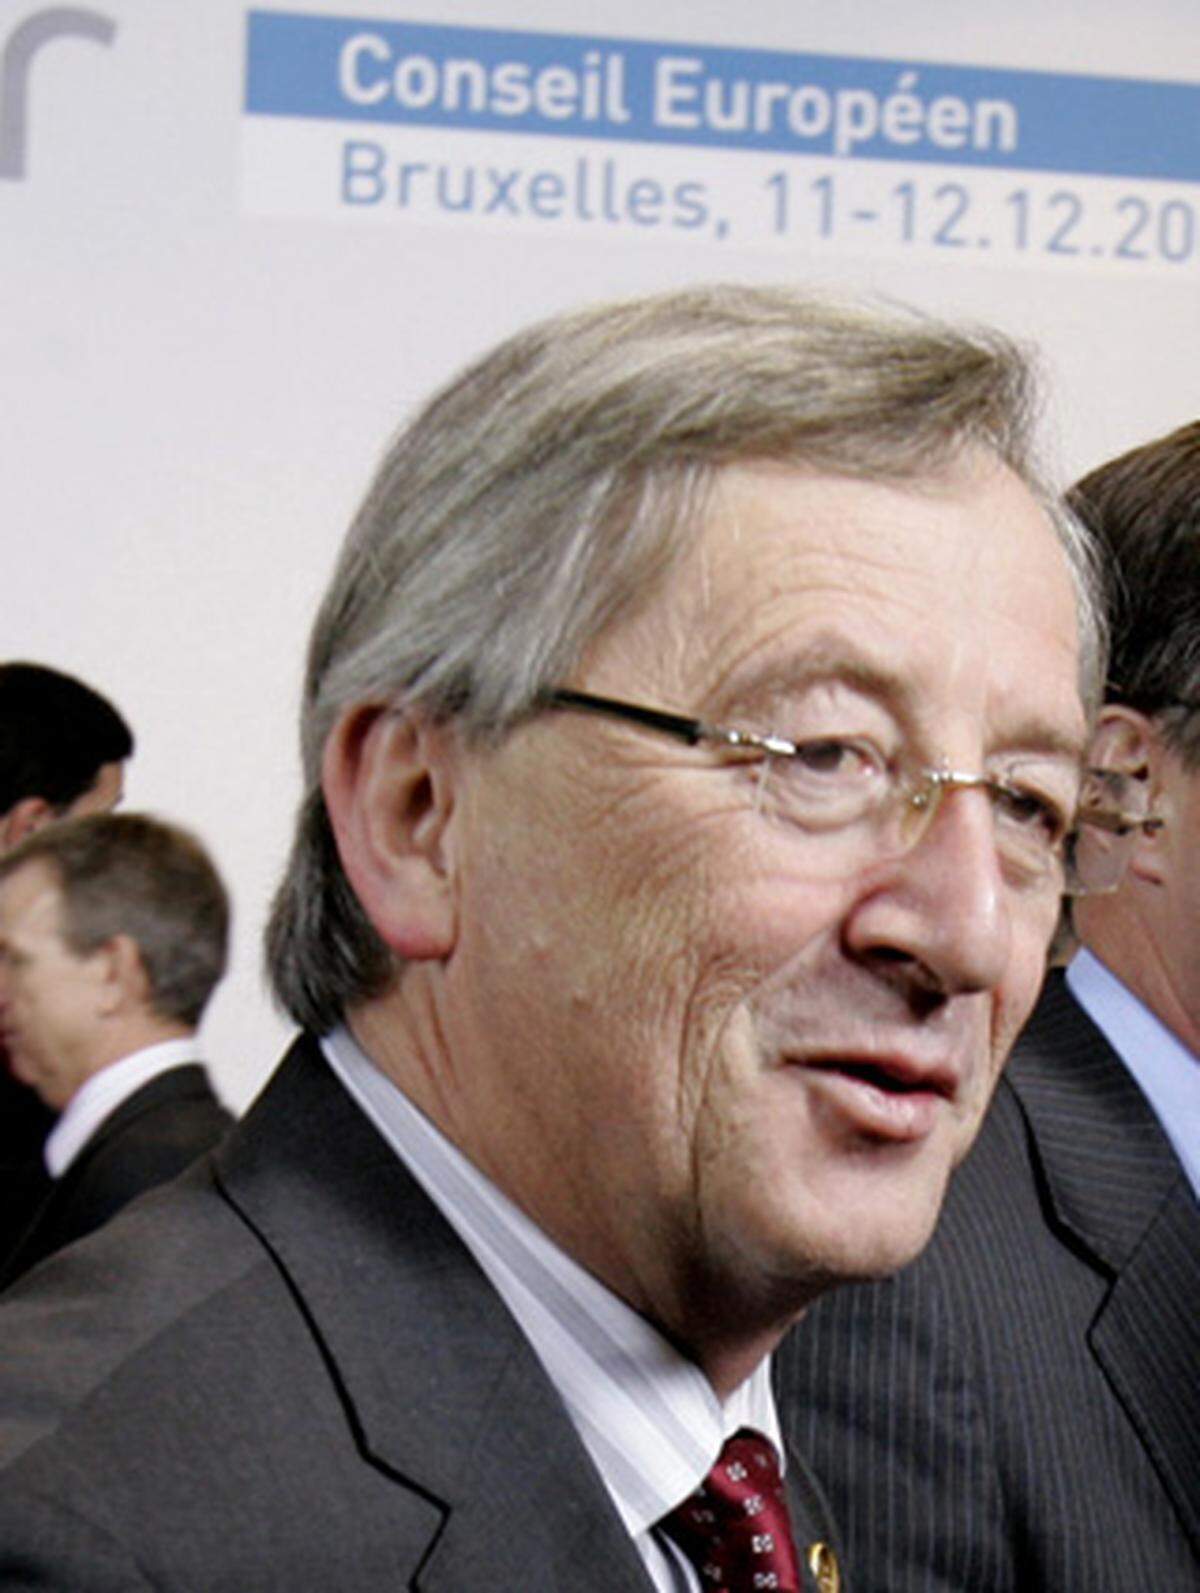 Auch der luxemburgische Premier Jean-Claude Juncker, der sich selbst für den Posten des Ratspräsidenten beworben hatte, bezeichnete die Kür des Belgiers als "eine gute Wahl".